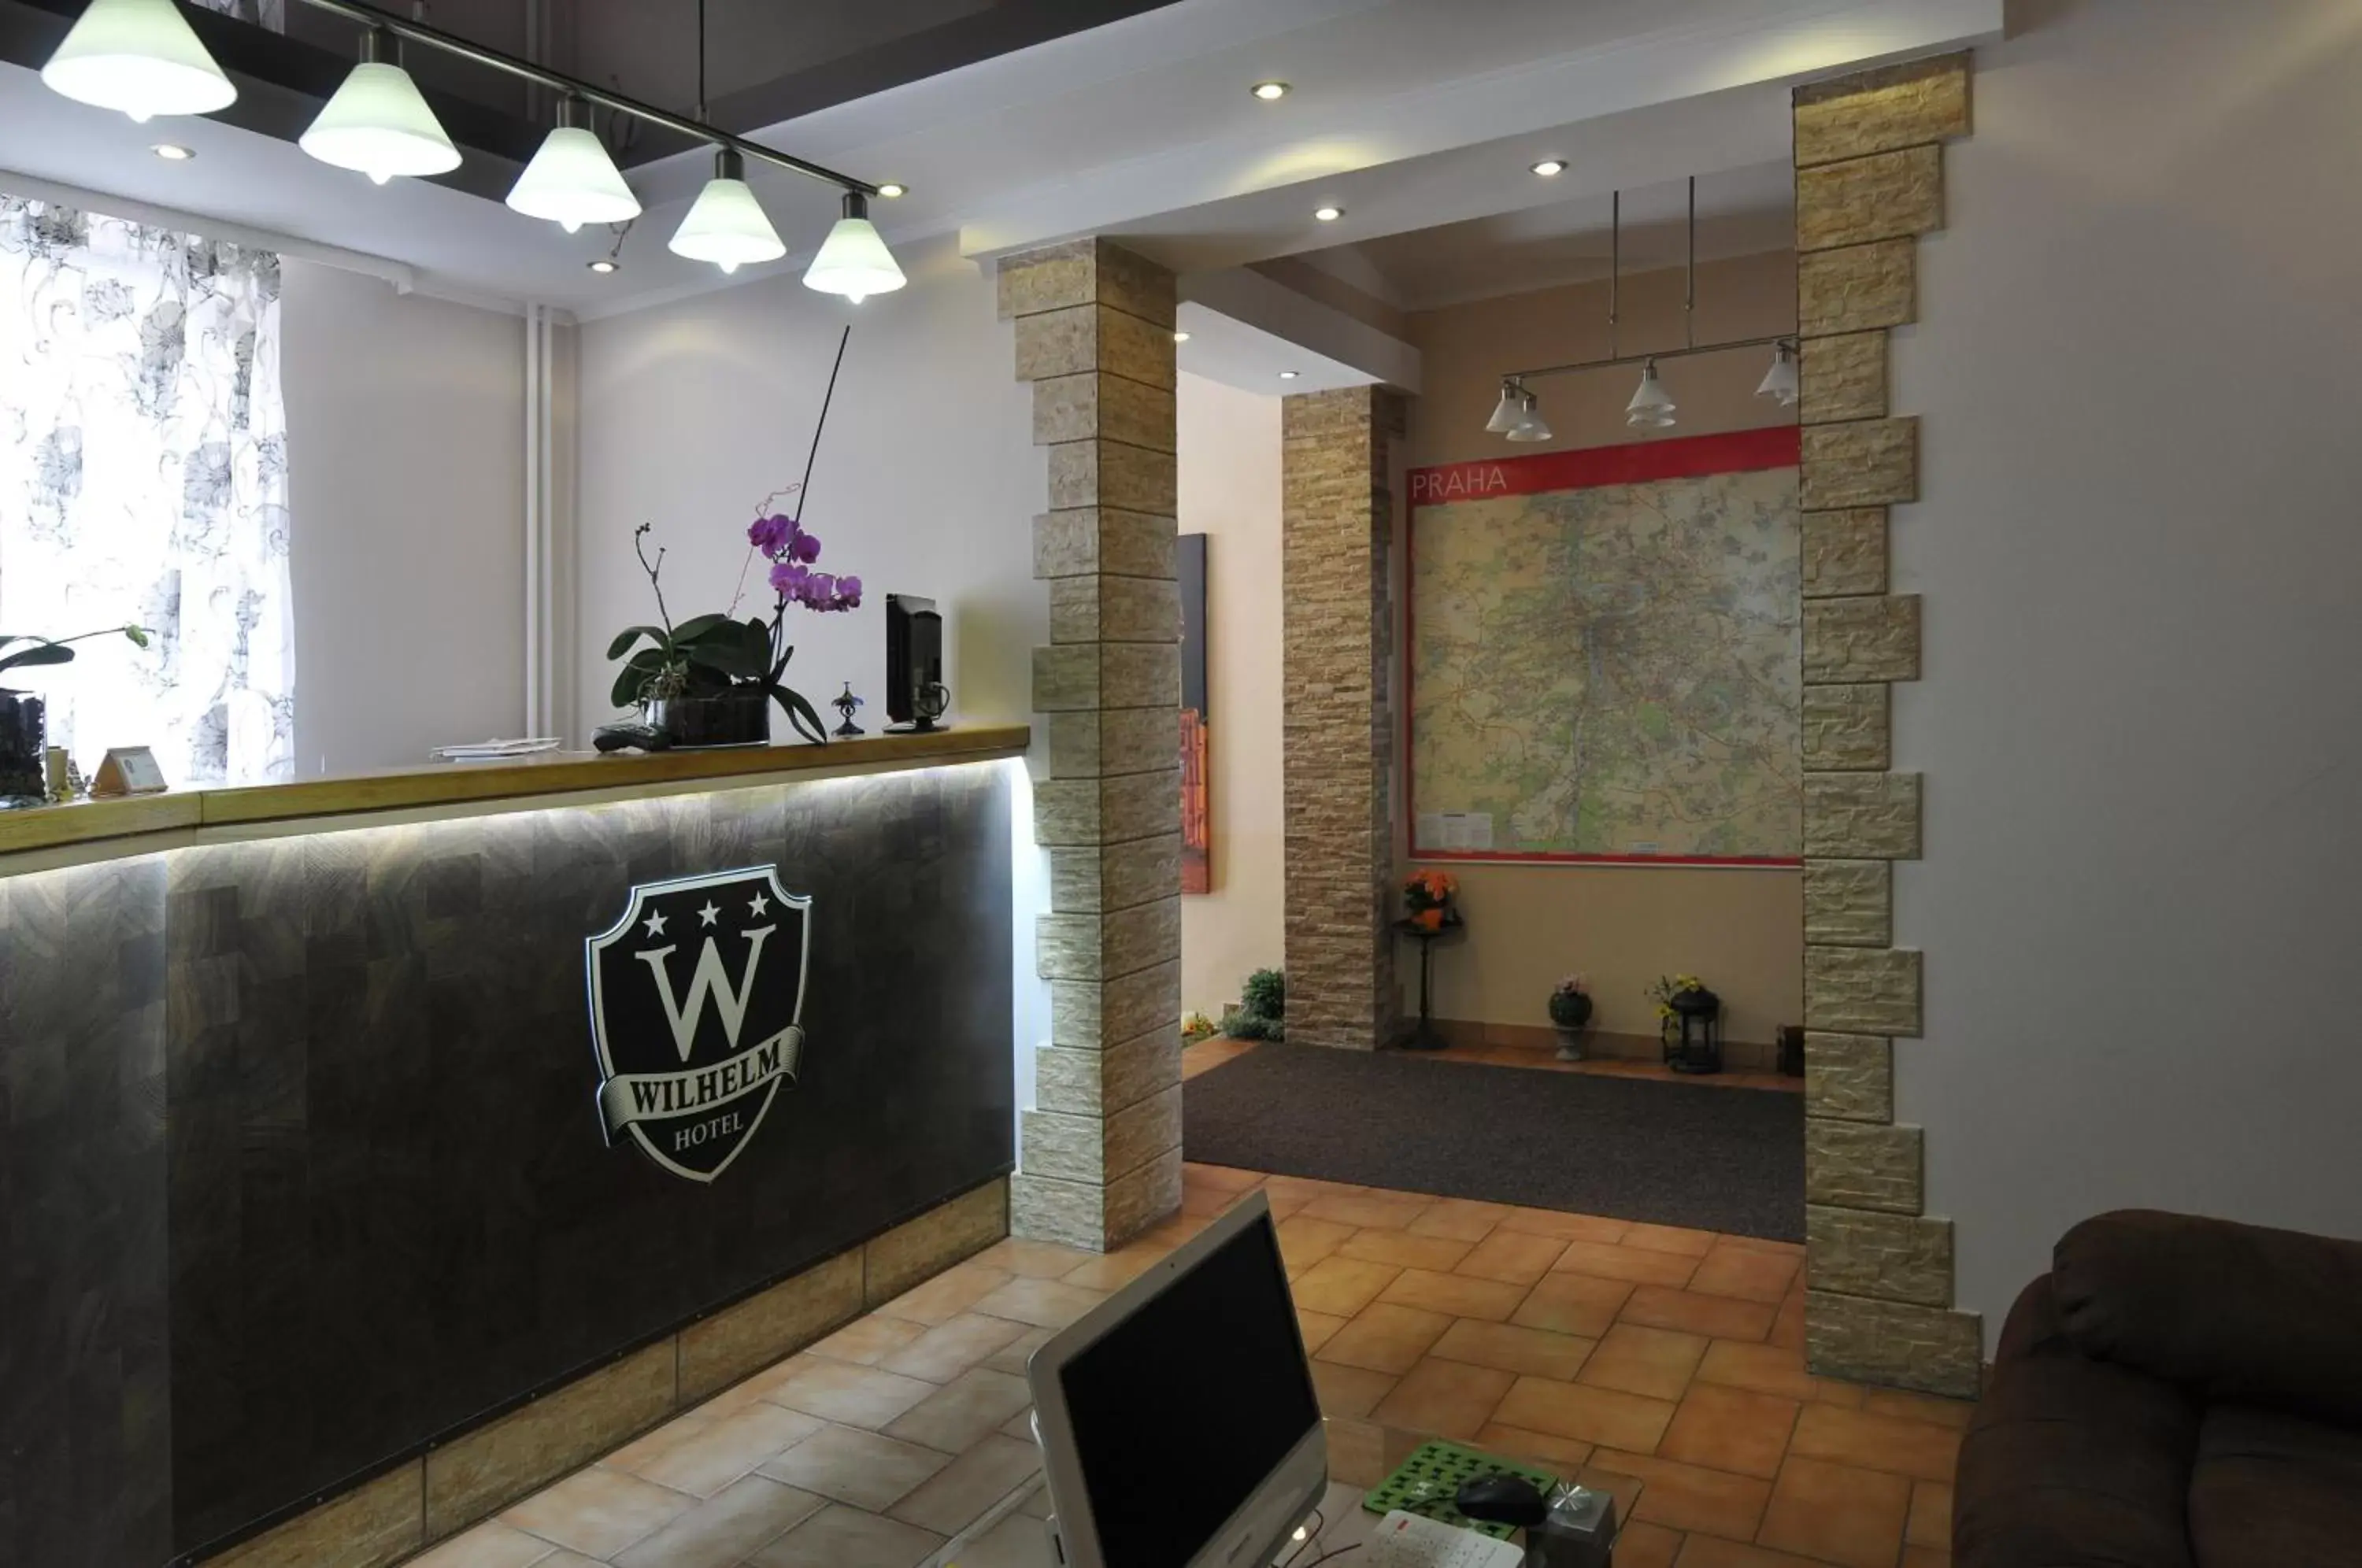 Lobby or reception, Lobby/Reception in Hotel Wilhelm